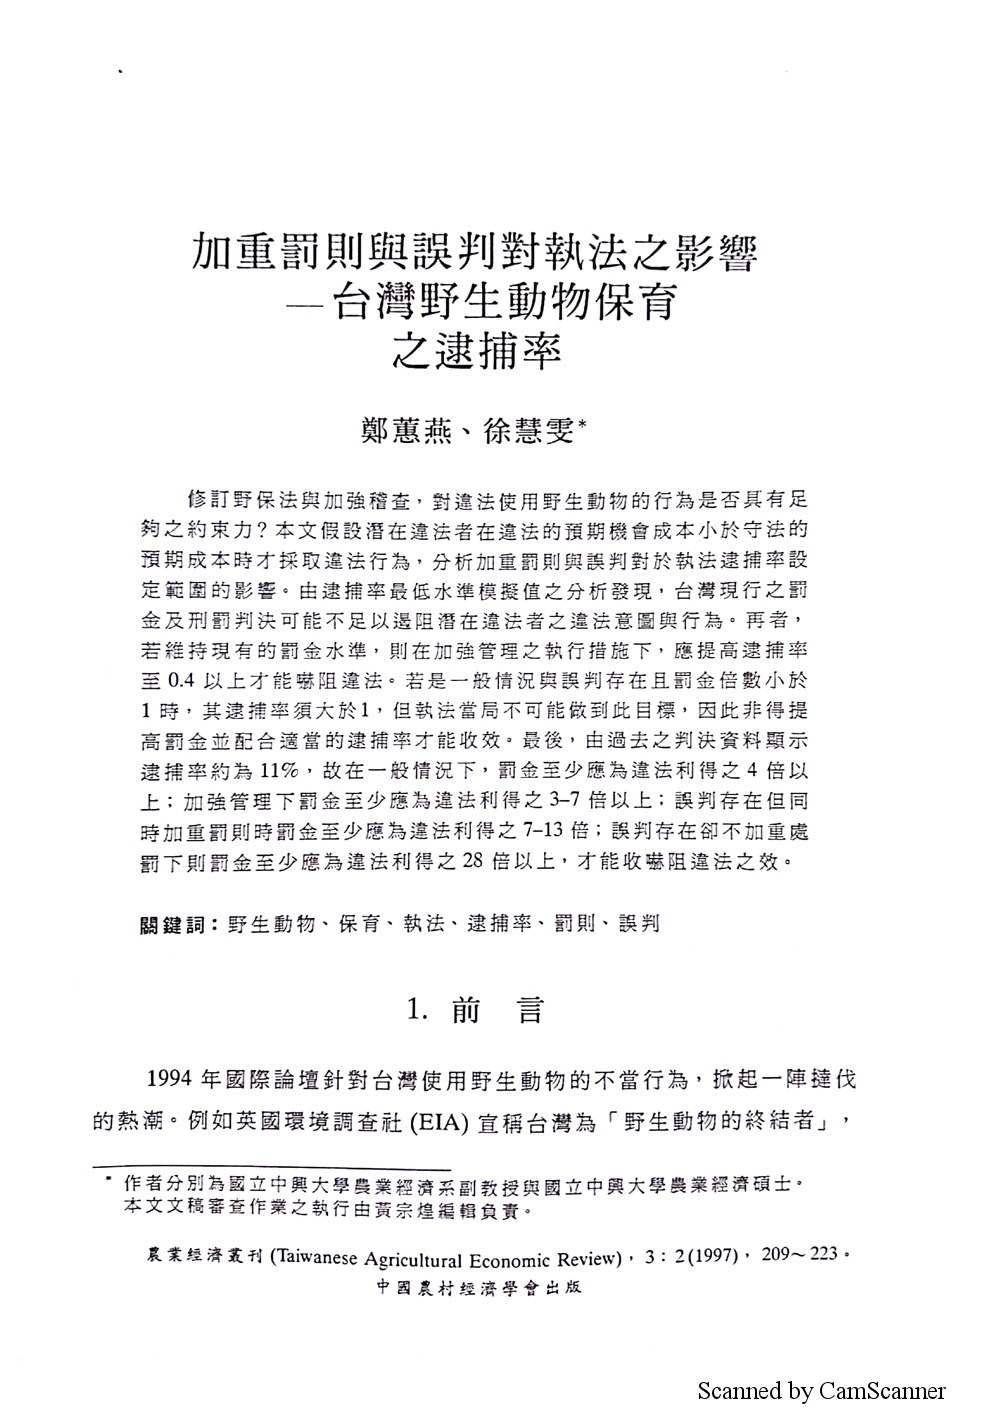 加重罰則與誤判對執法之影響___台灣野生動物保育之逮捕率.jpg